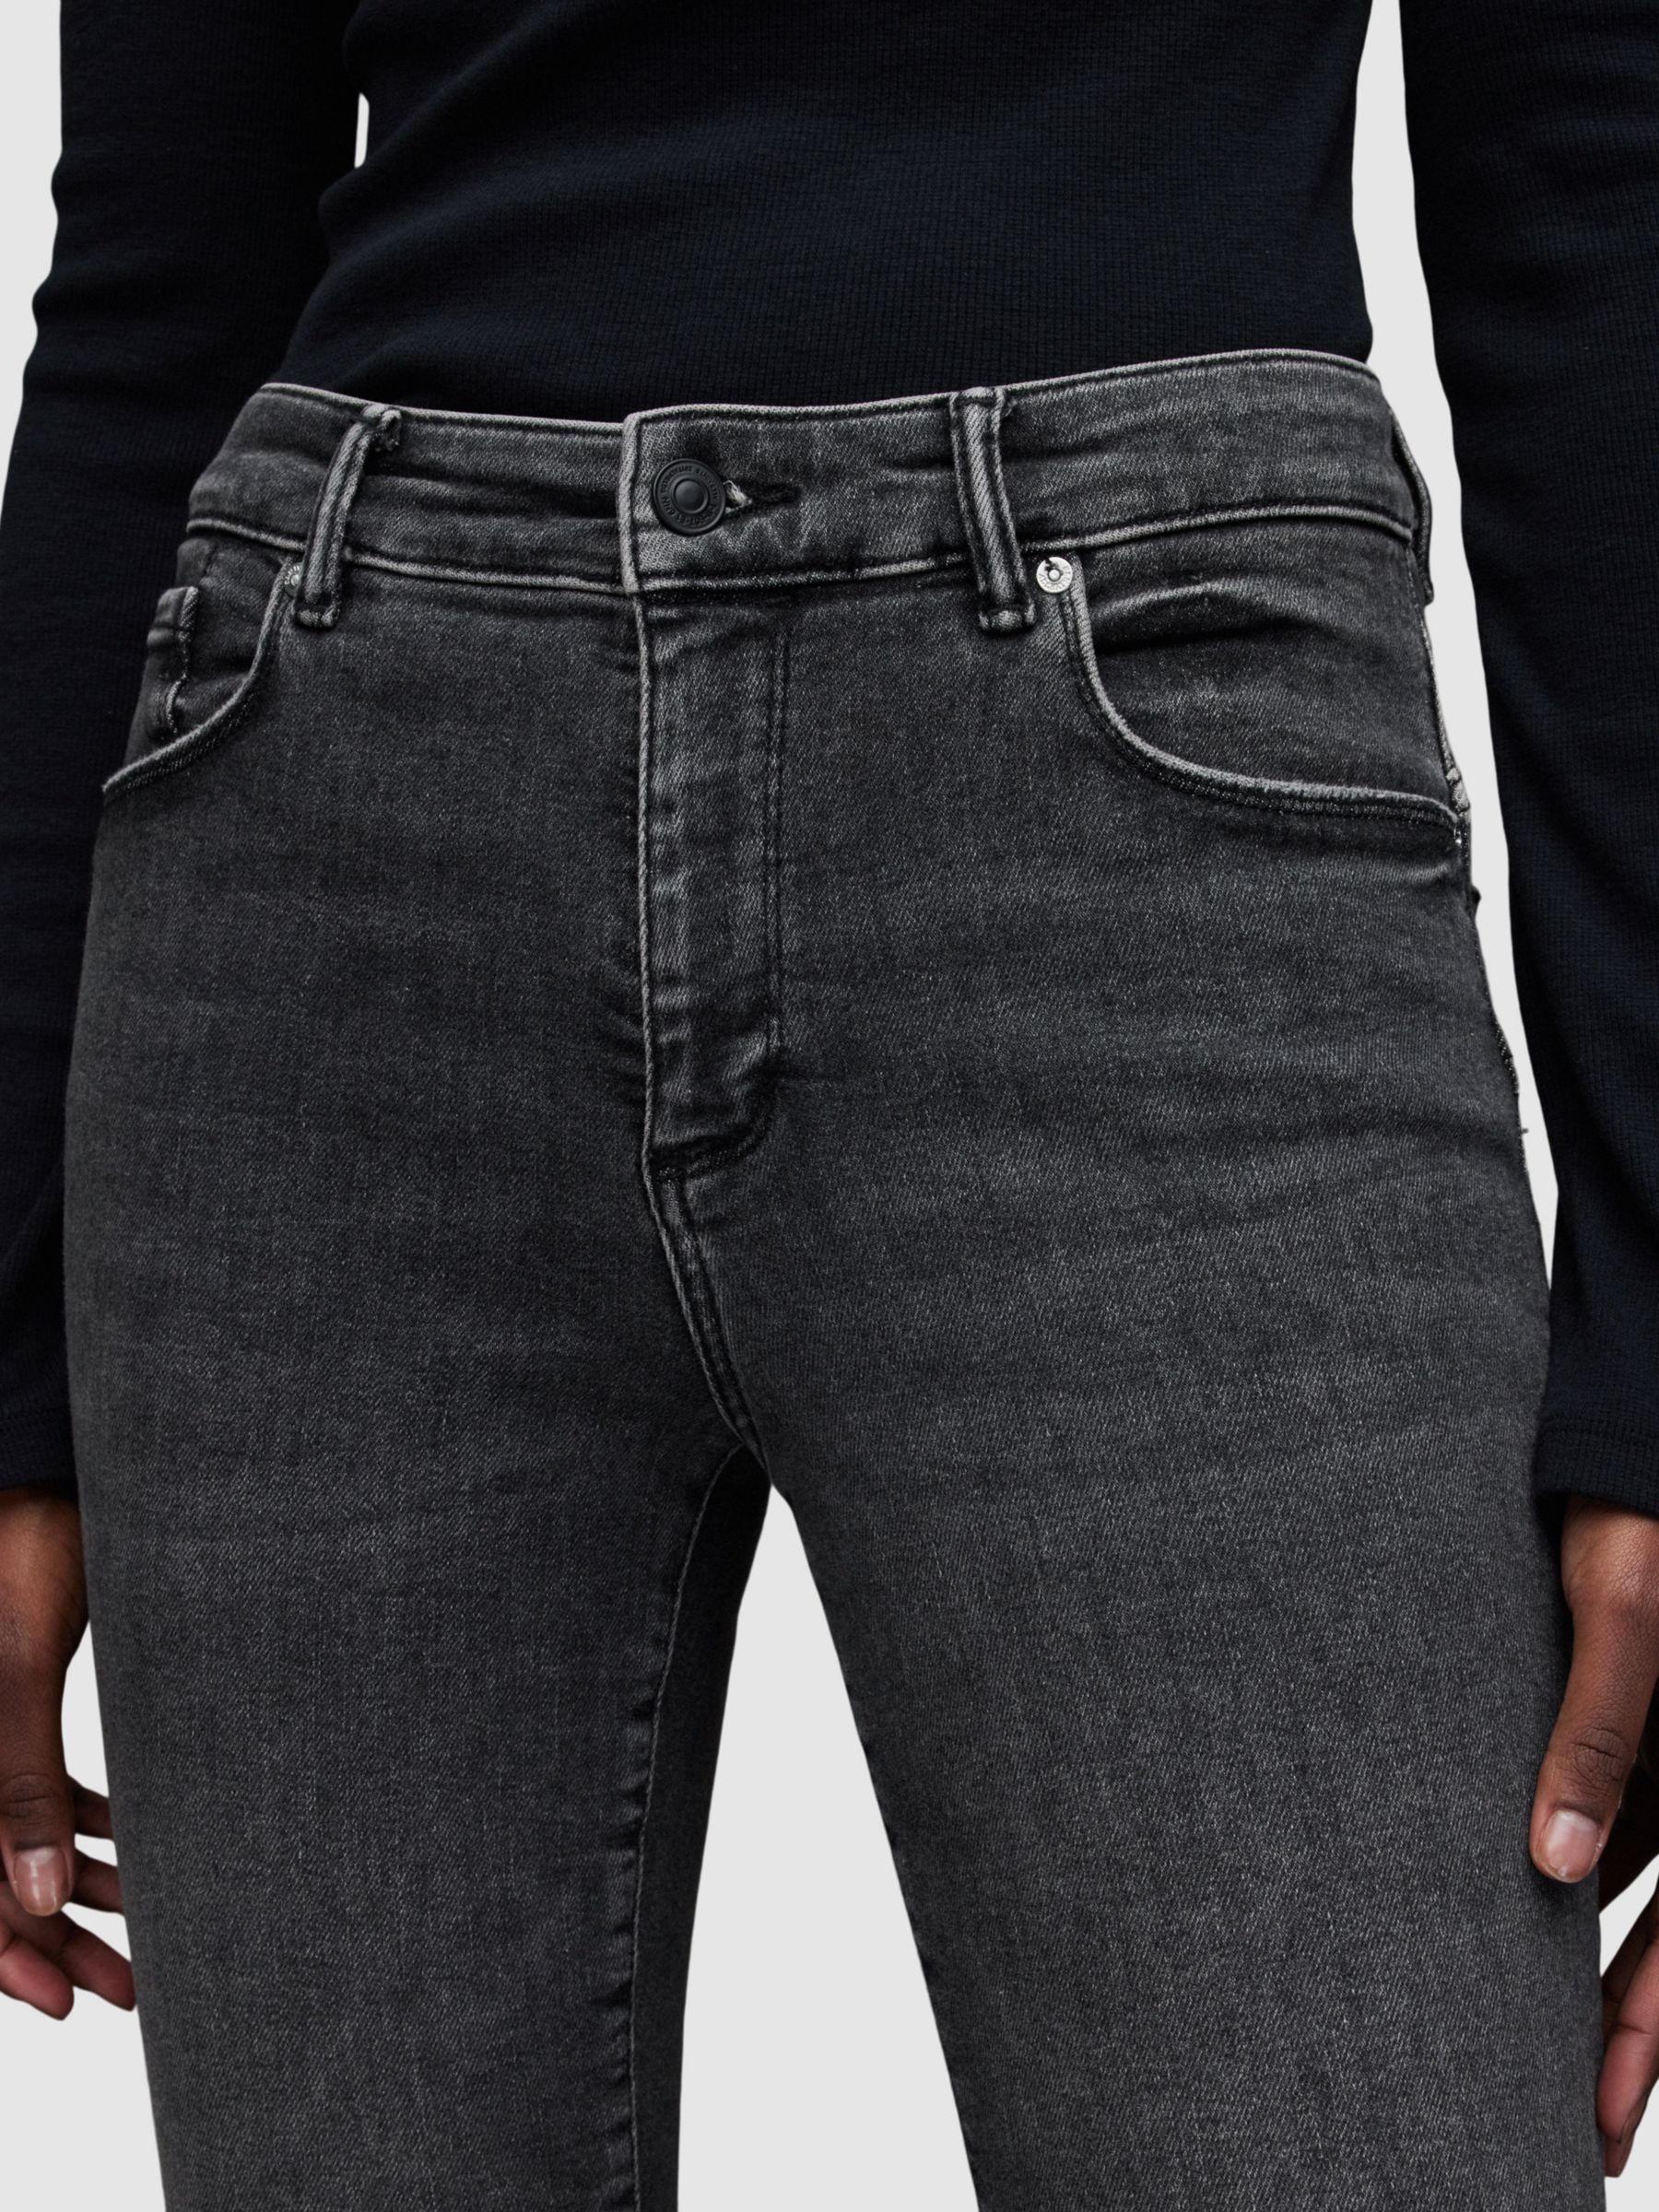 AllSaints Miller Push Up Jeans, Washed Black, 26